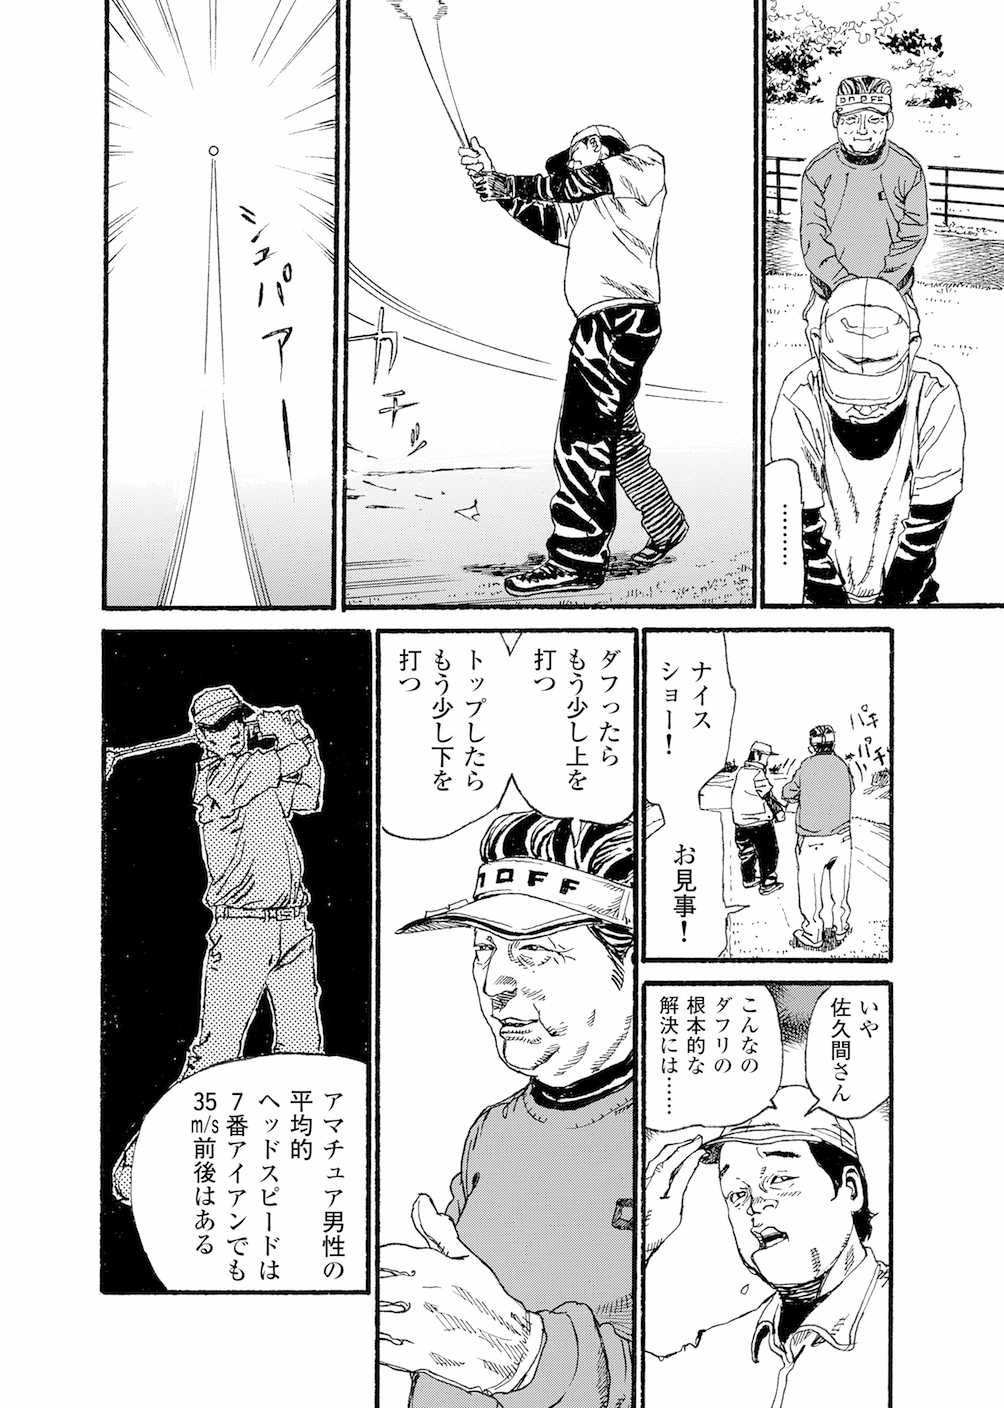 第1話 「人間の潜在能力」 - 無料で読めるゴルフレッスンコミックWEB | 日本文芸社